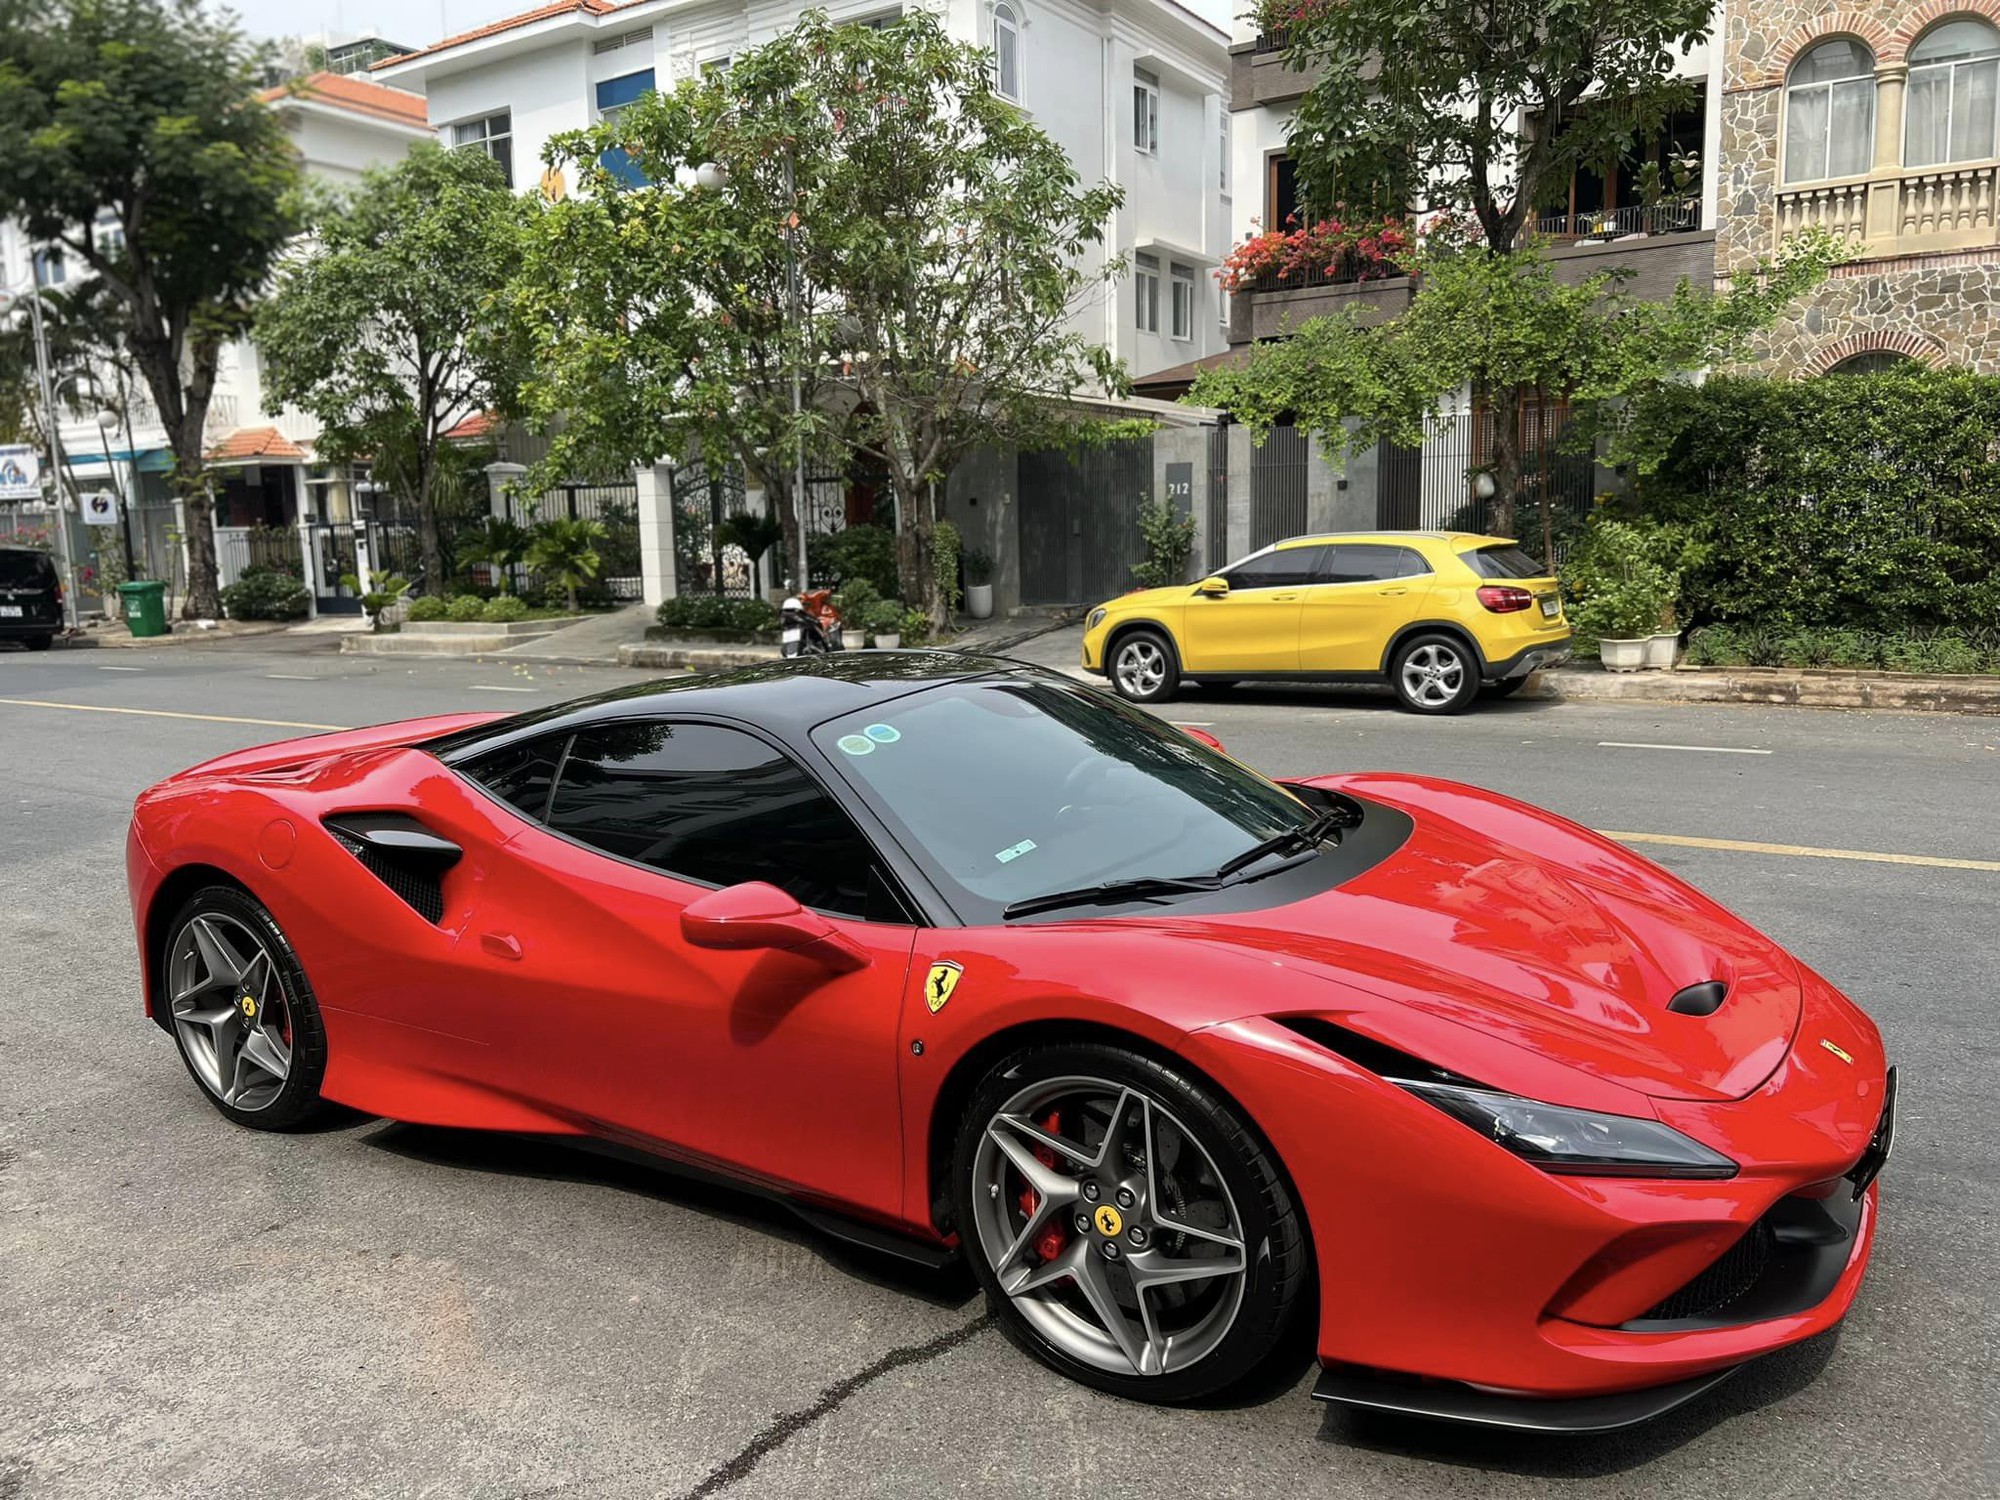 Cường Đô la hỏi mua Ferrari 12Cilindri sau vài giờ ra mắt, 'chốt deal' chỉ trong một nốt nhạc, dân mạng 'đoán già đoán non' chủ nhân thứ hai ở Việt Nam là một đại gia 'quen mặt'- Ảnh 12.